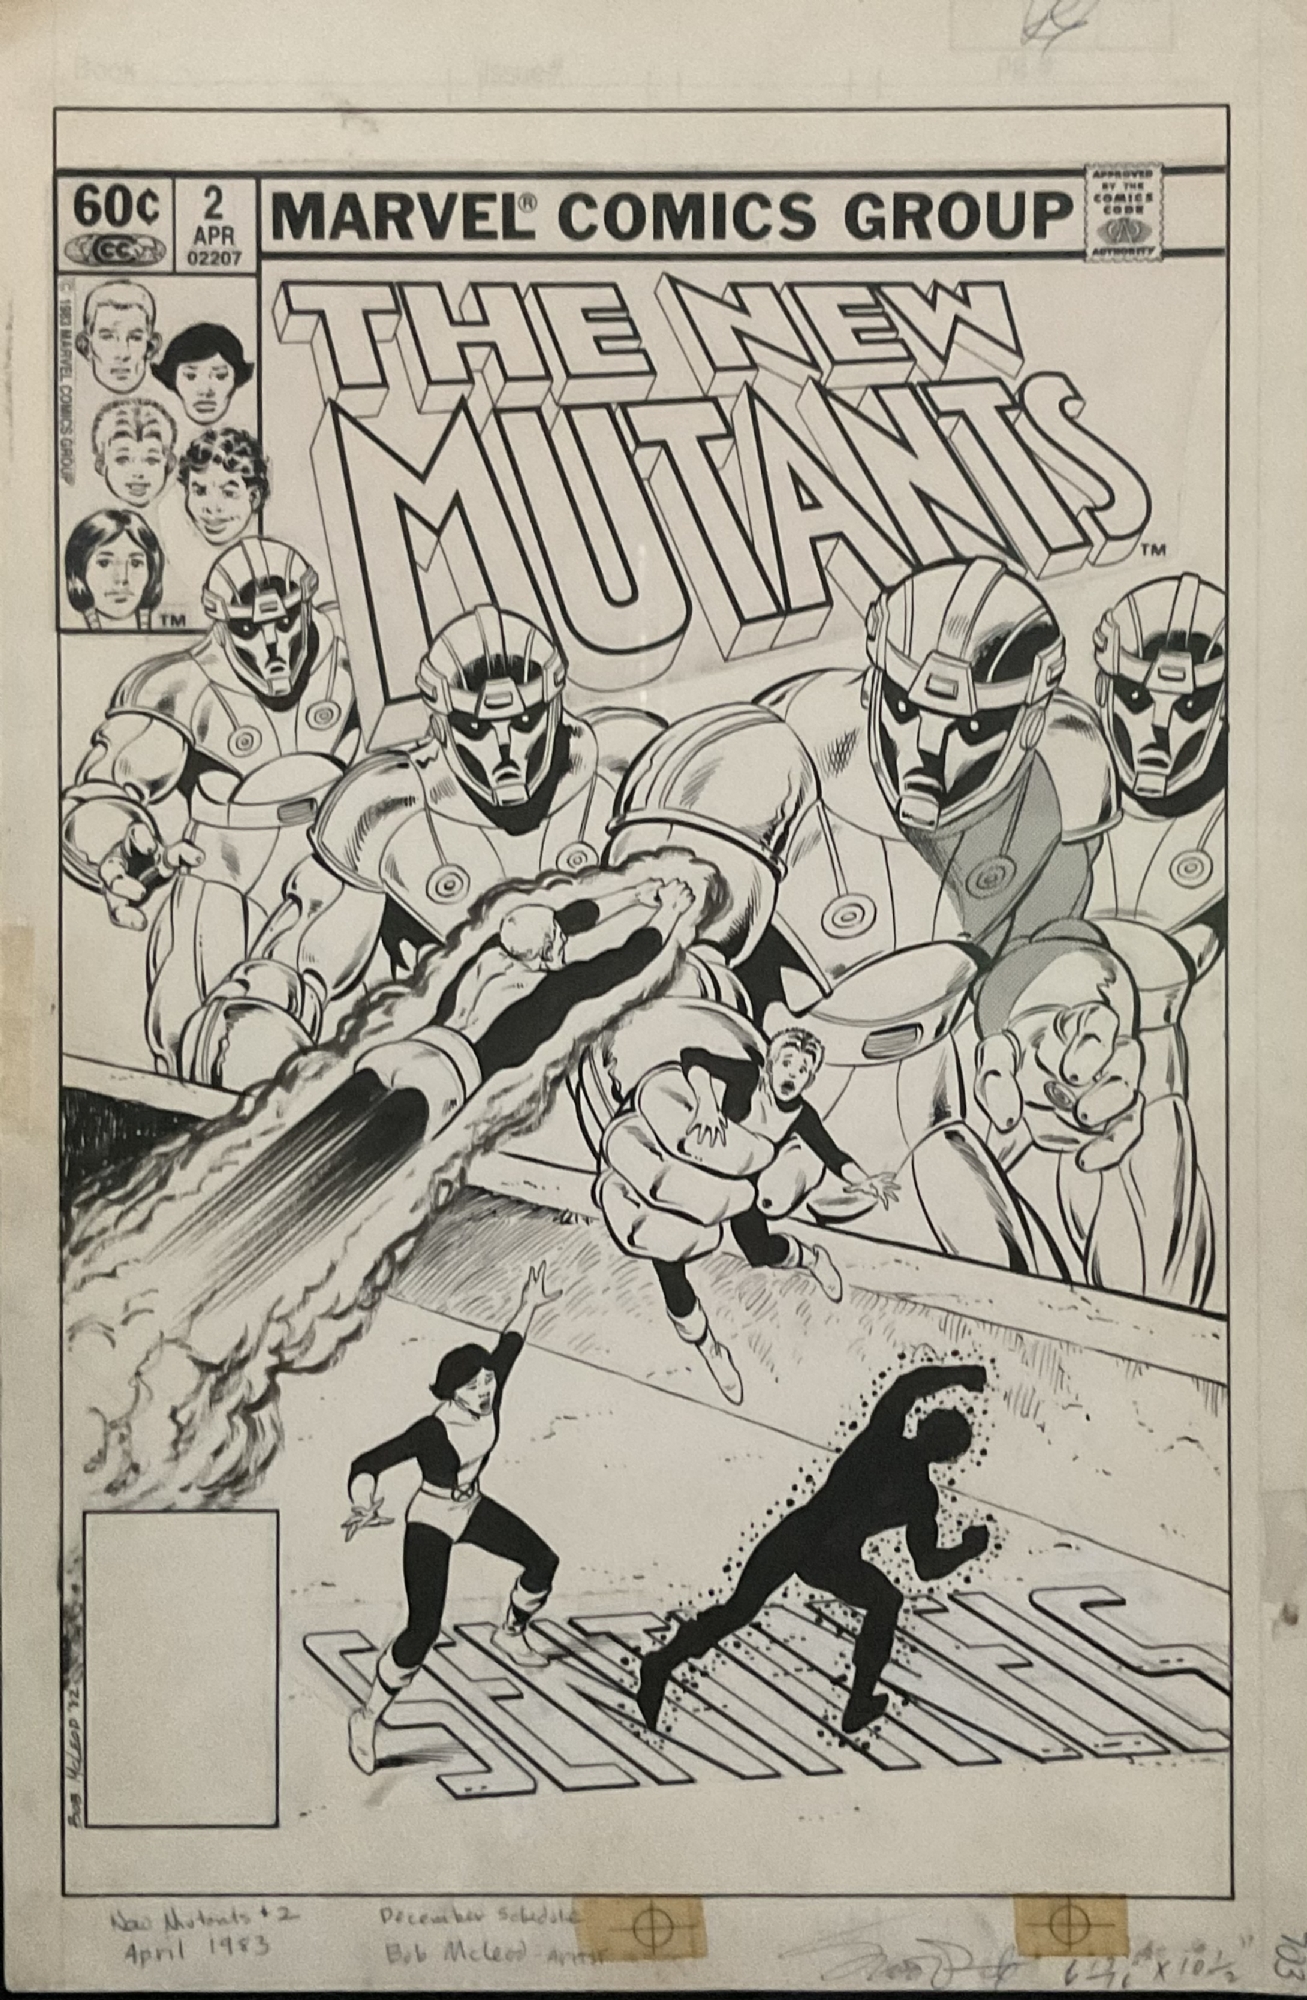 Sketchbook - New Mutants